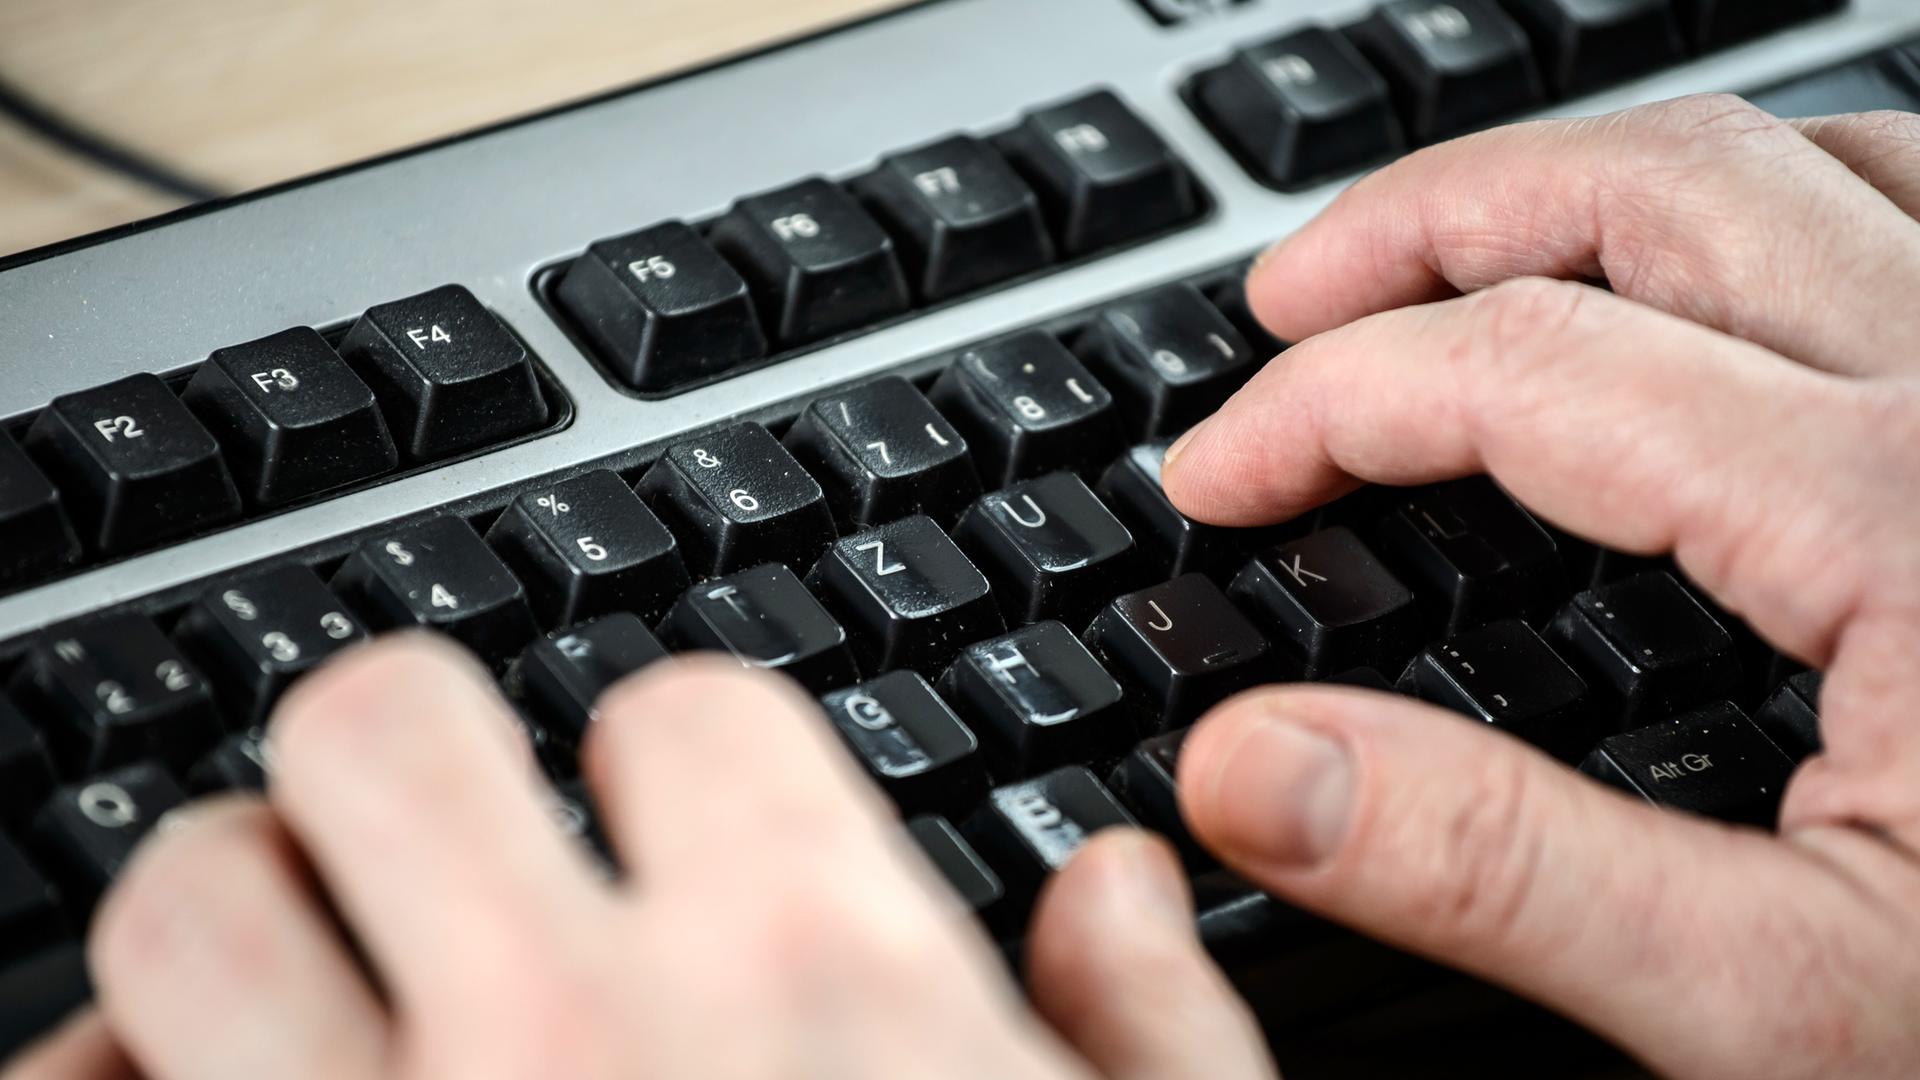 Das Bild zeigt zwei Hände in einer halbnahen Aufnahme im Anschnitt. Die Finger sind über schwarzen Tasten einer grauen Computertastatur zu sehen.